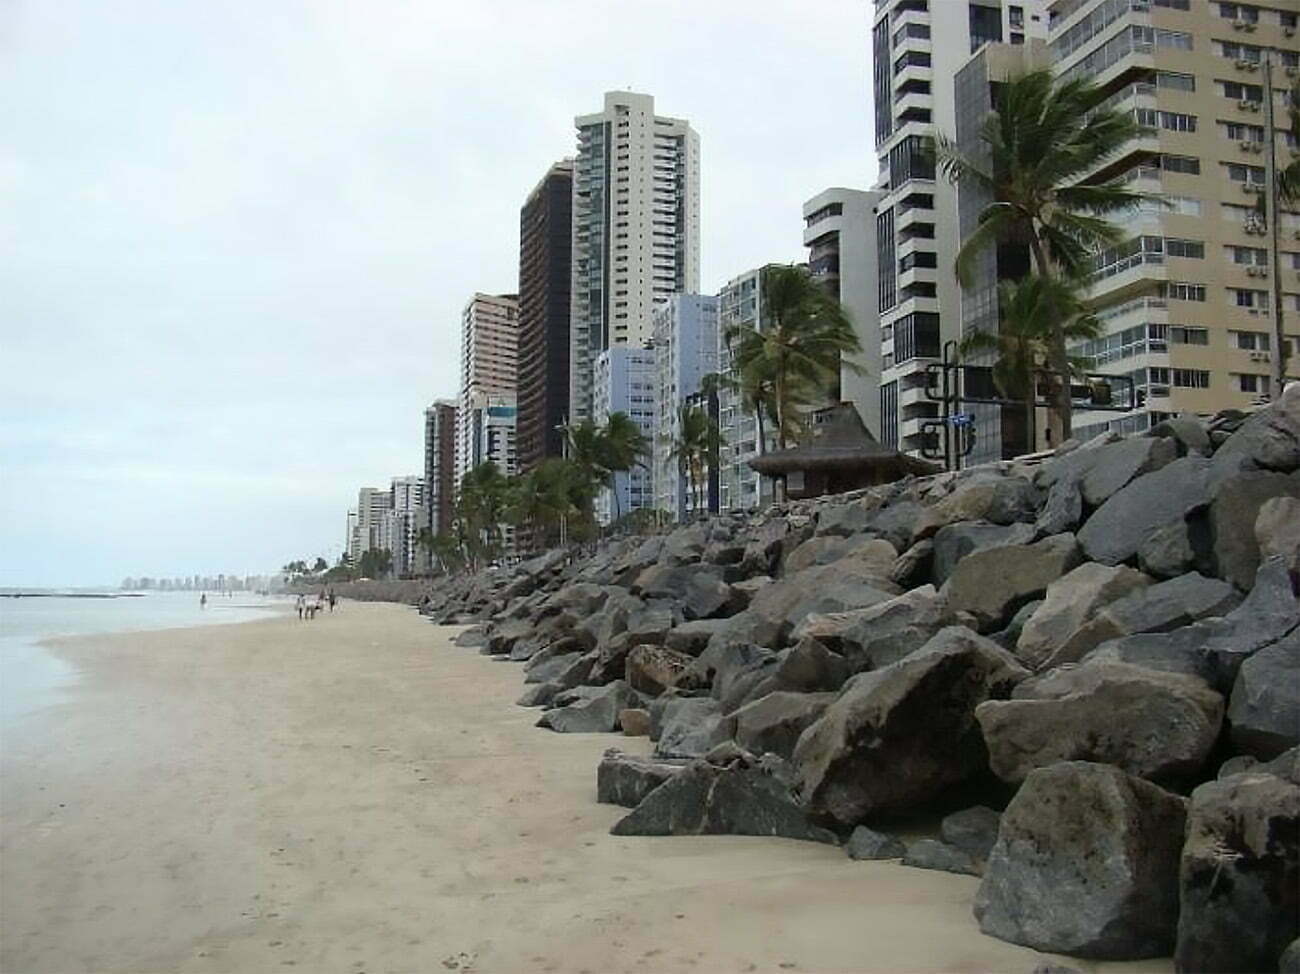 Praia de Boa Viagem, Recife